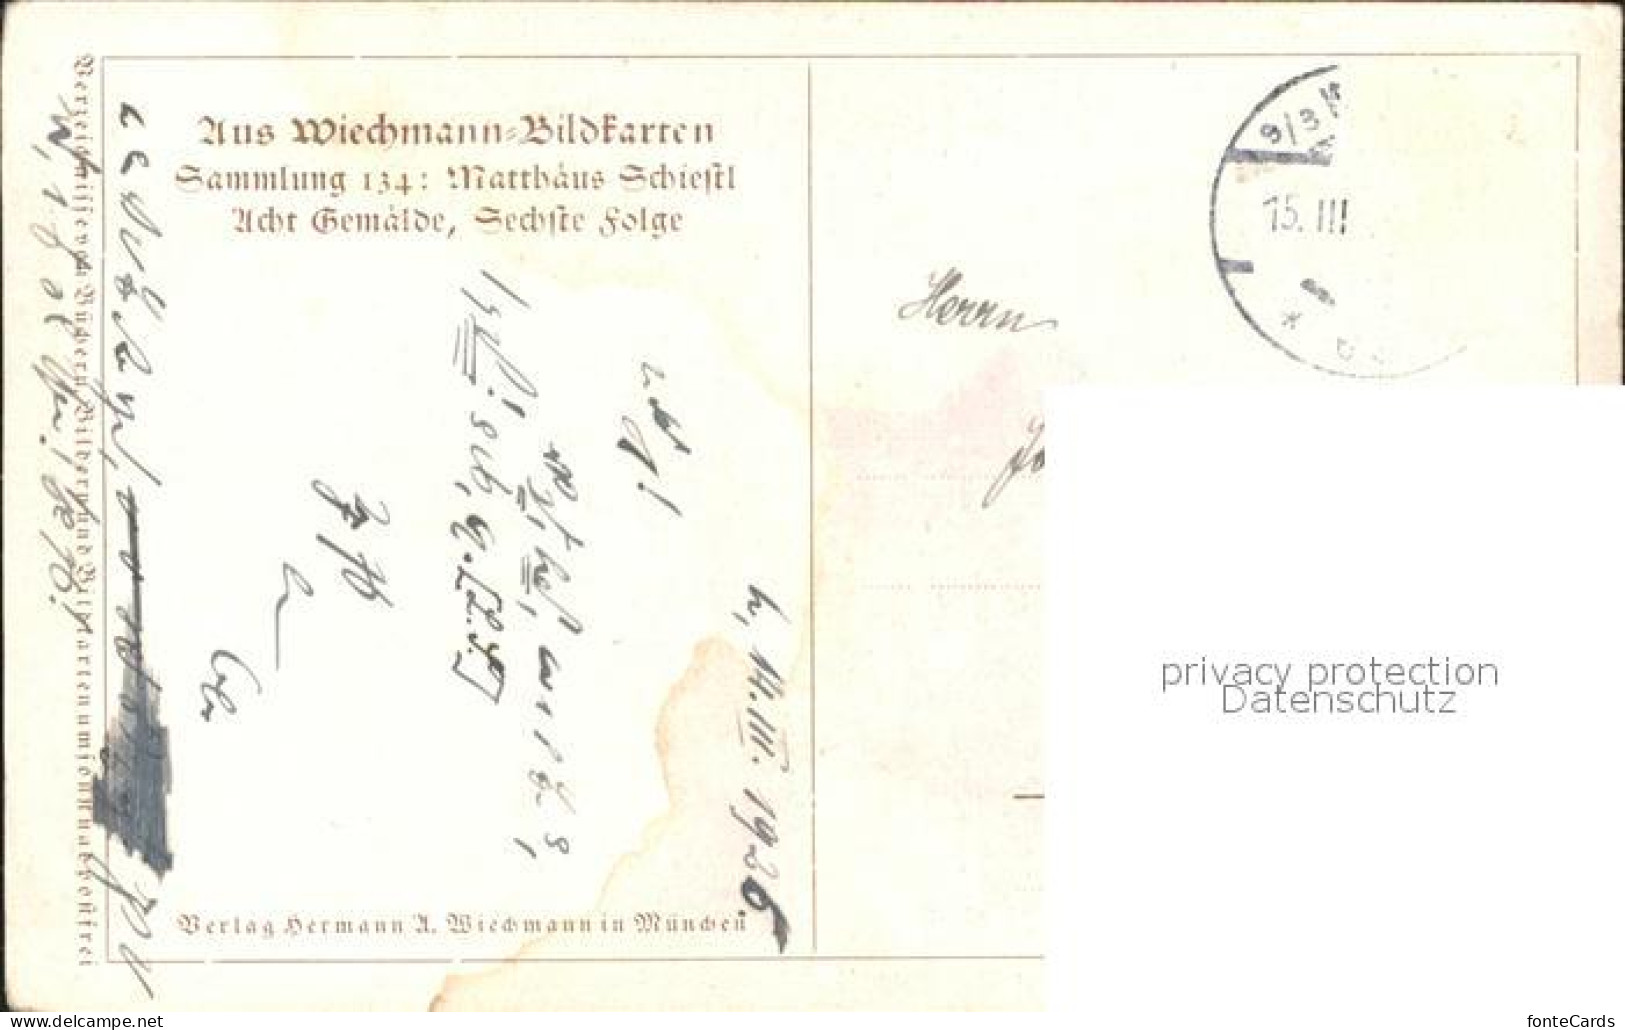 71910583 Schiestl M. Abendfriede Wiechmann-Bildkarte Sammlung 134   - Schiestl, Matthäus